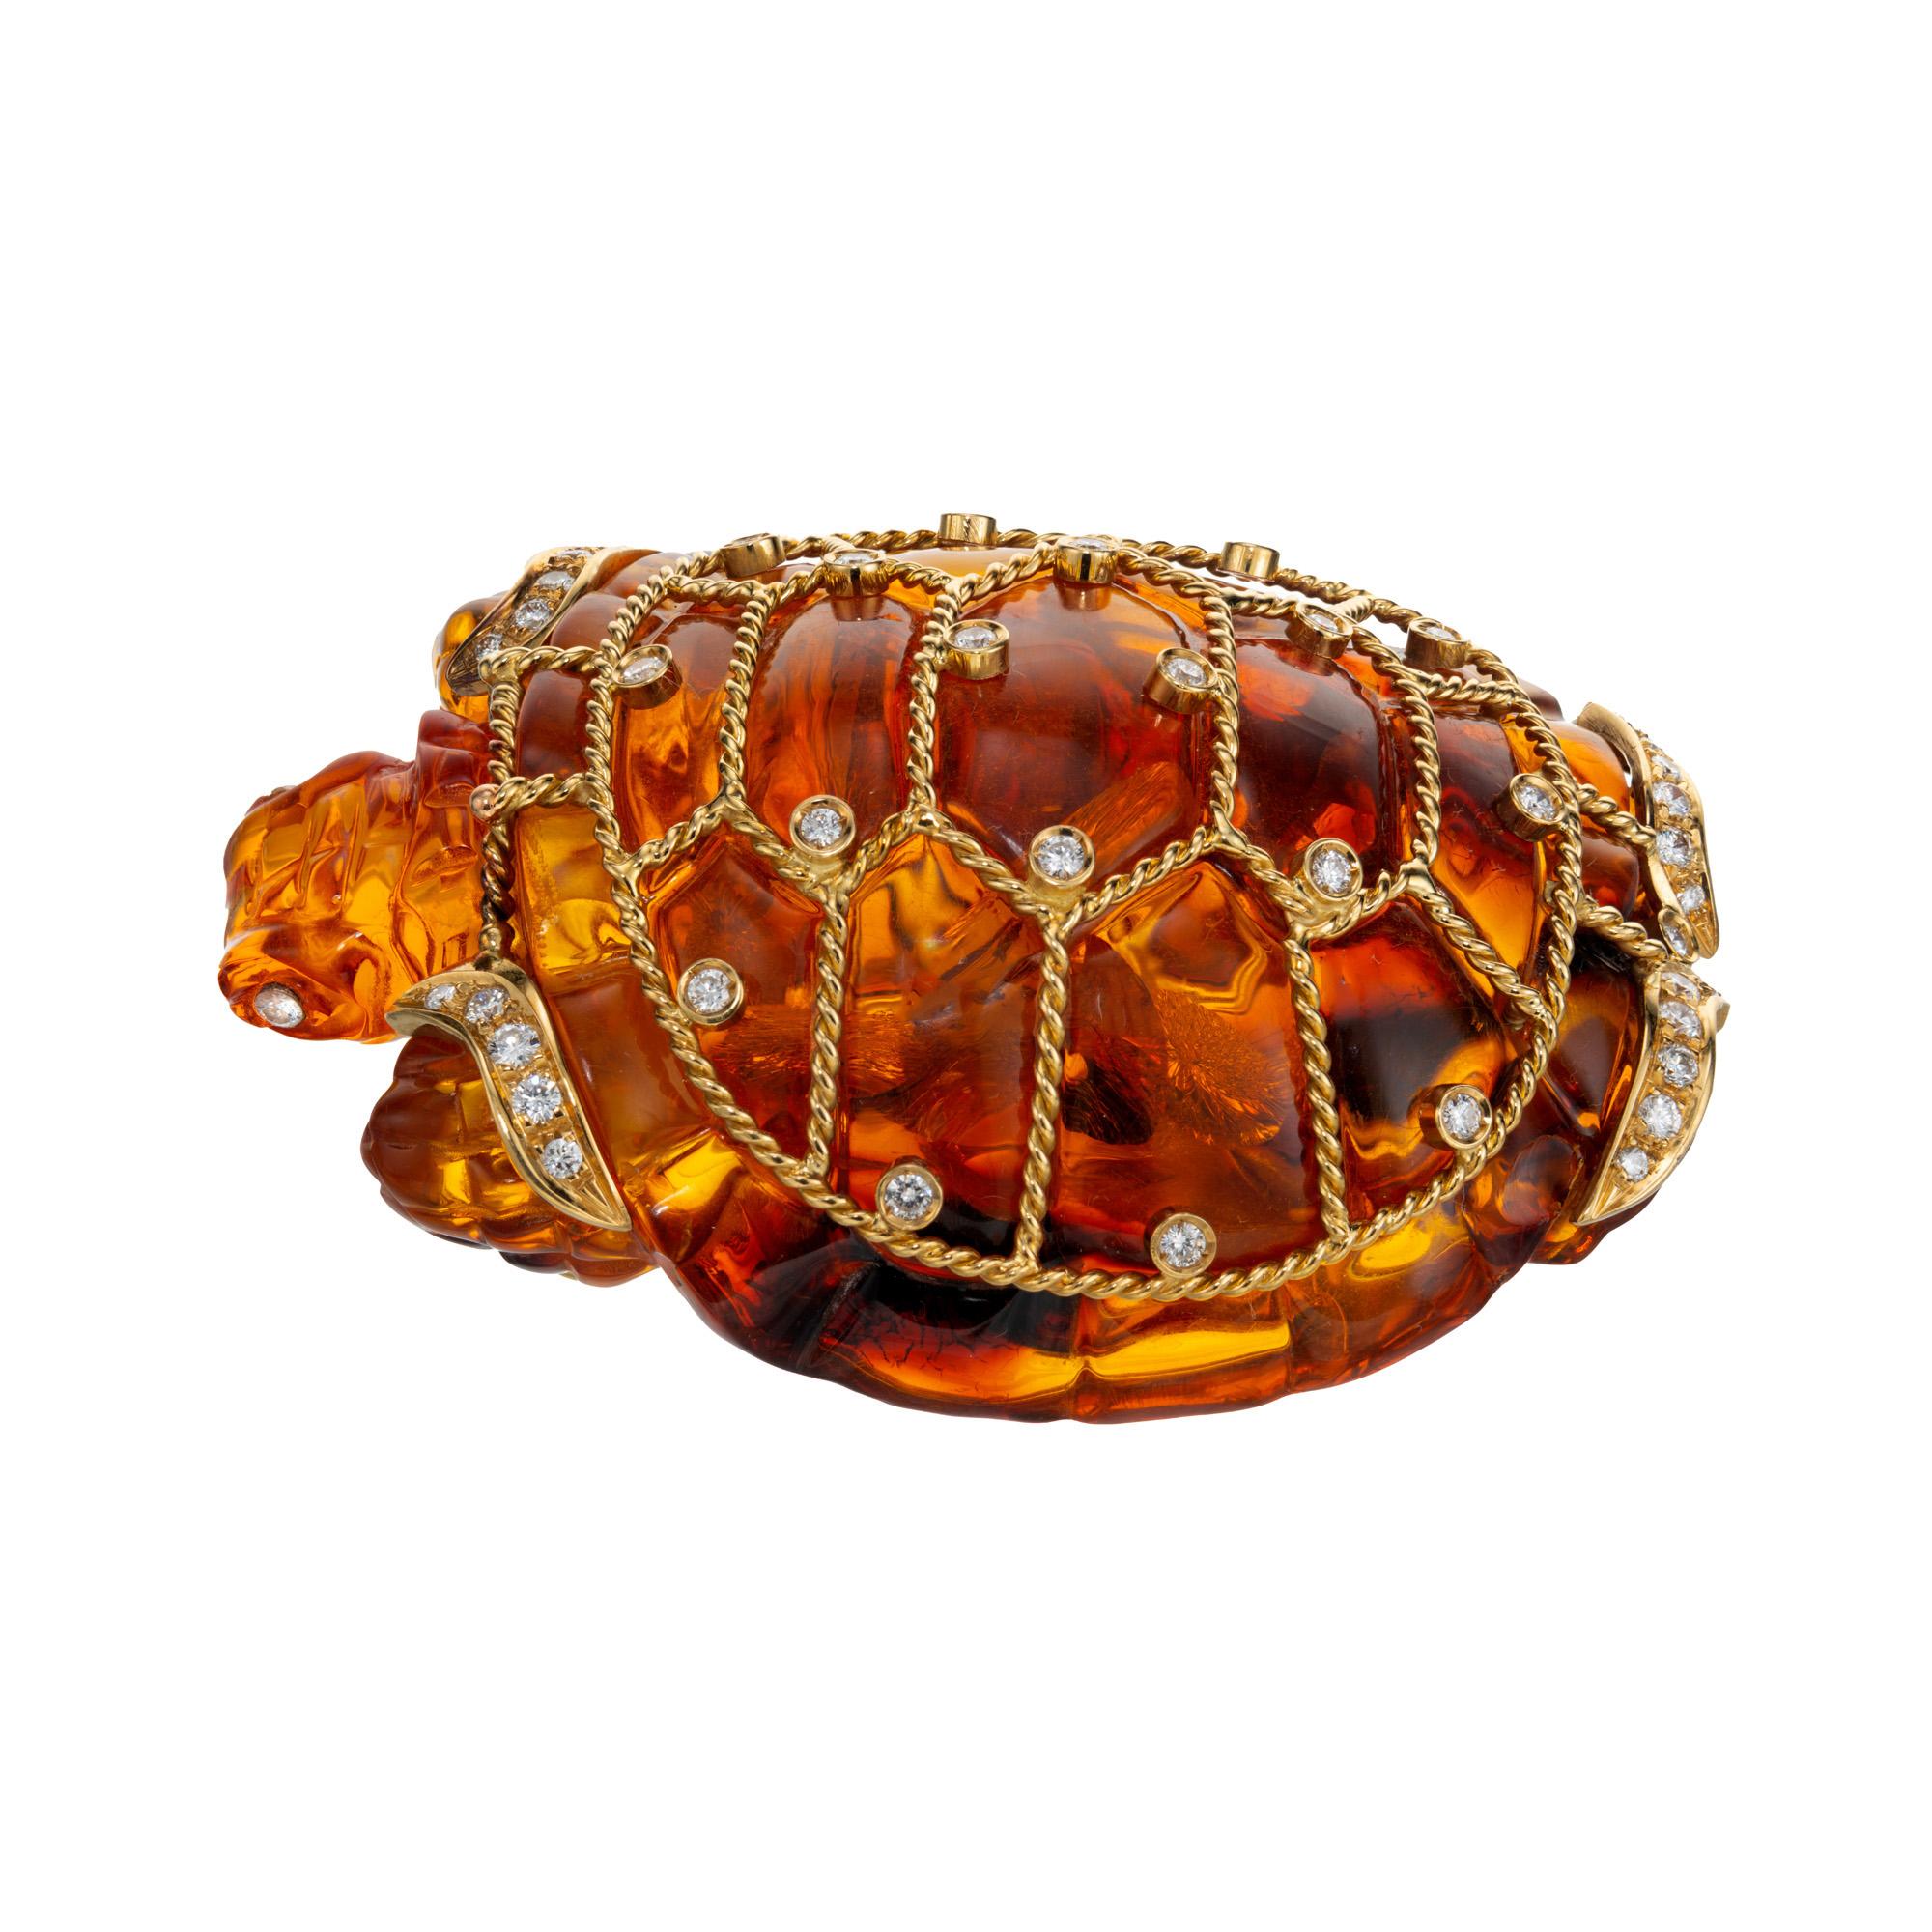 Grande broche en ambre sculpté, unique et richement colorée, représentant une tortue. Cette tortue d'ambre sculptée est décorée d'un encadrement en fil torsadé d'or jaune 18k, rehaussé de 43 diamants taille brillant en chaton et de style libre.